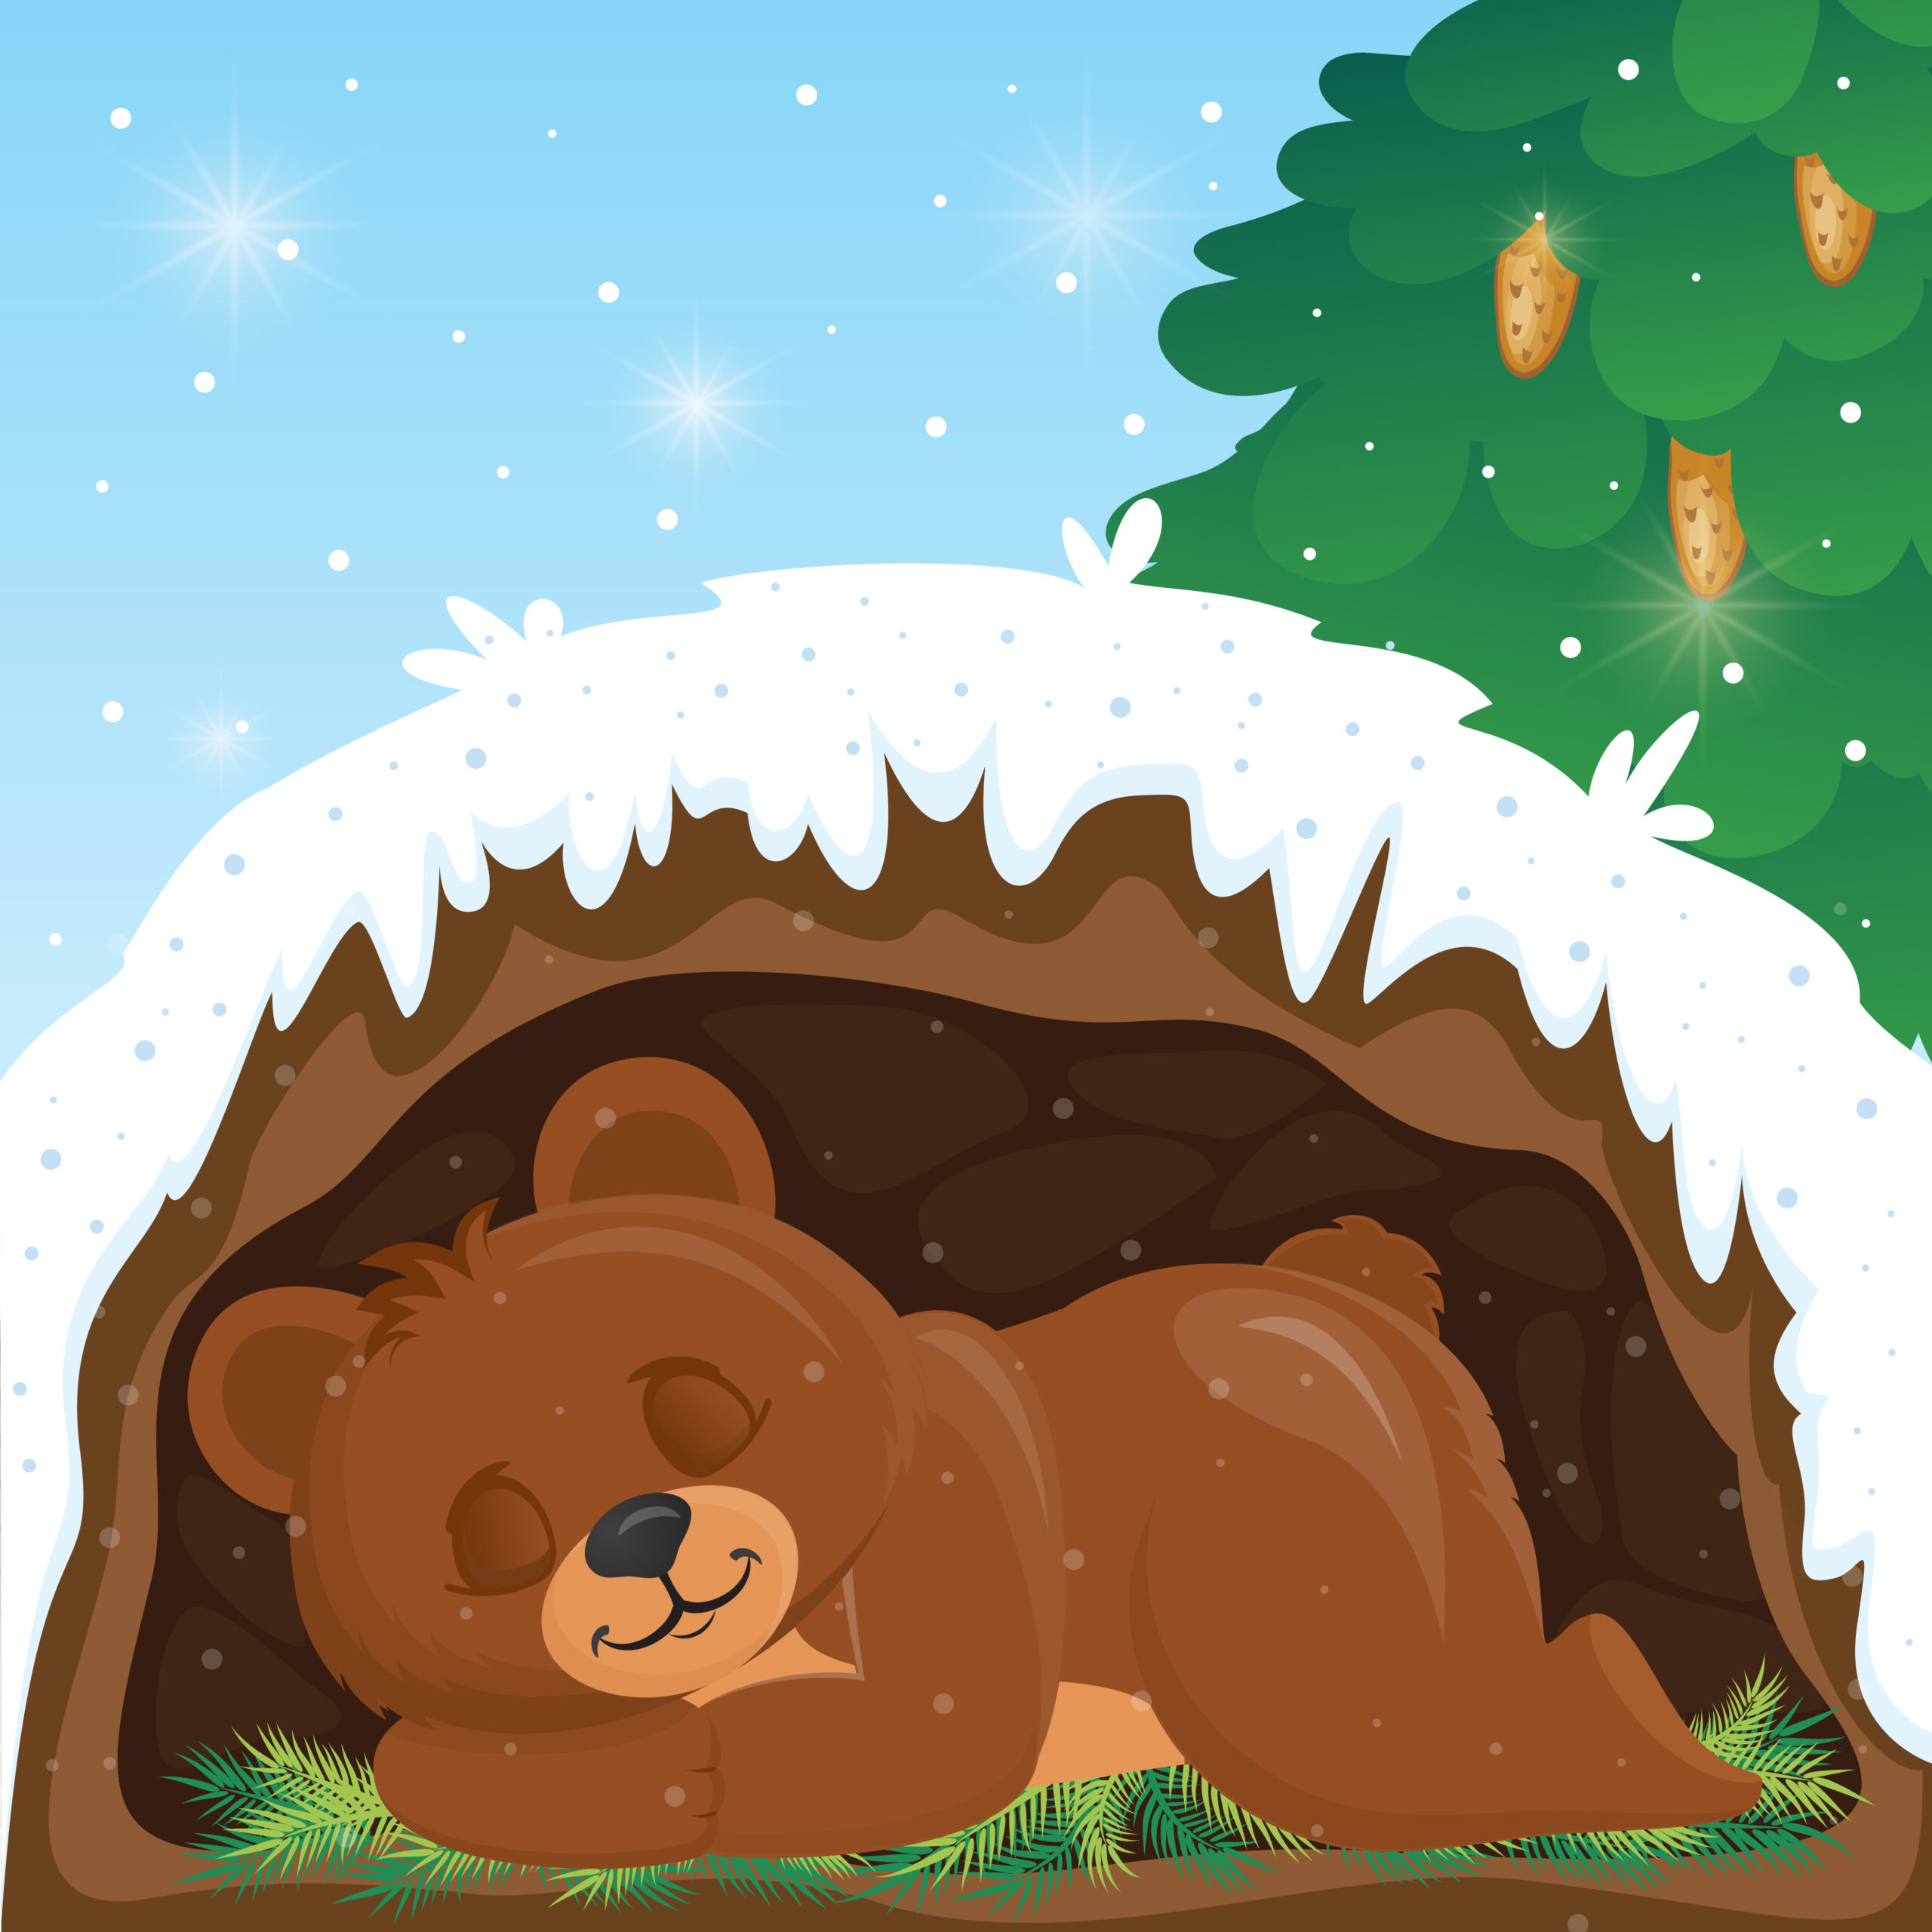 Медвежонок спит в берлоге